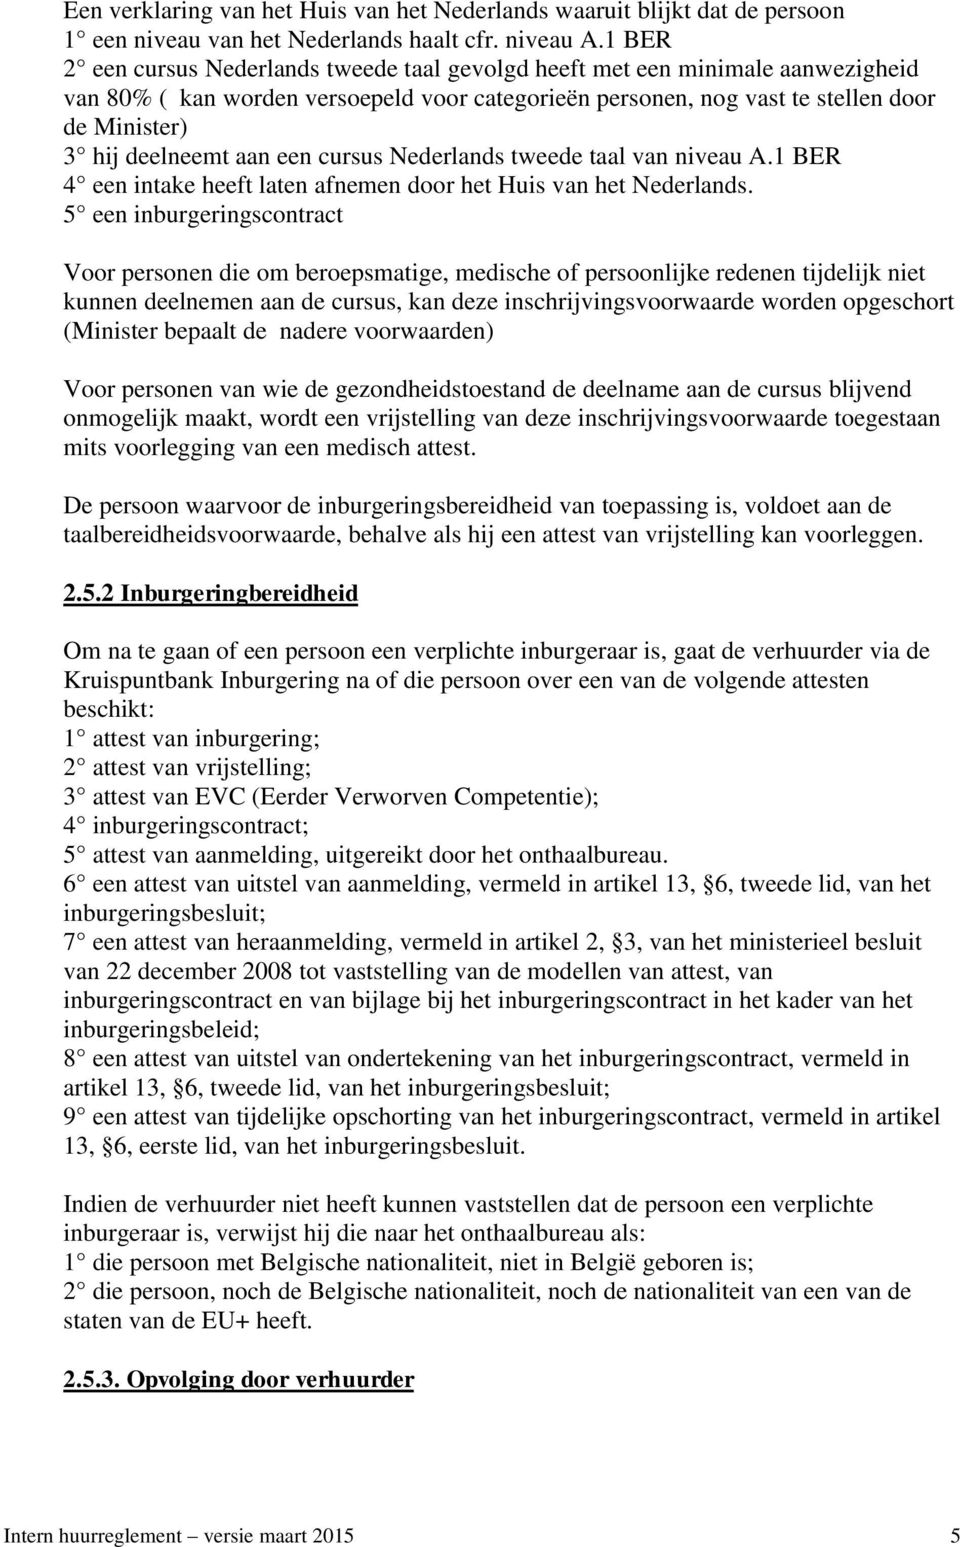 aan een cursus Nederlands tweede taal van niveau A.1 BER 4 een intake heeft laten afnemen door het Huis van het Nederlands.